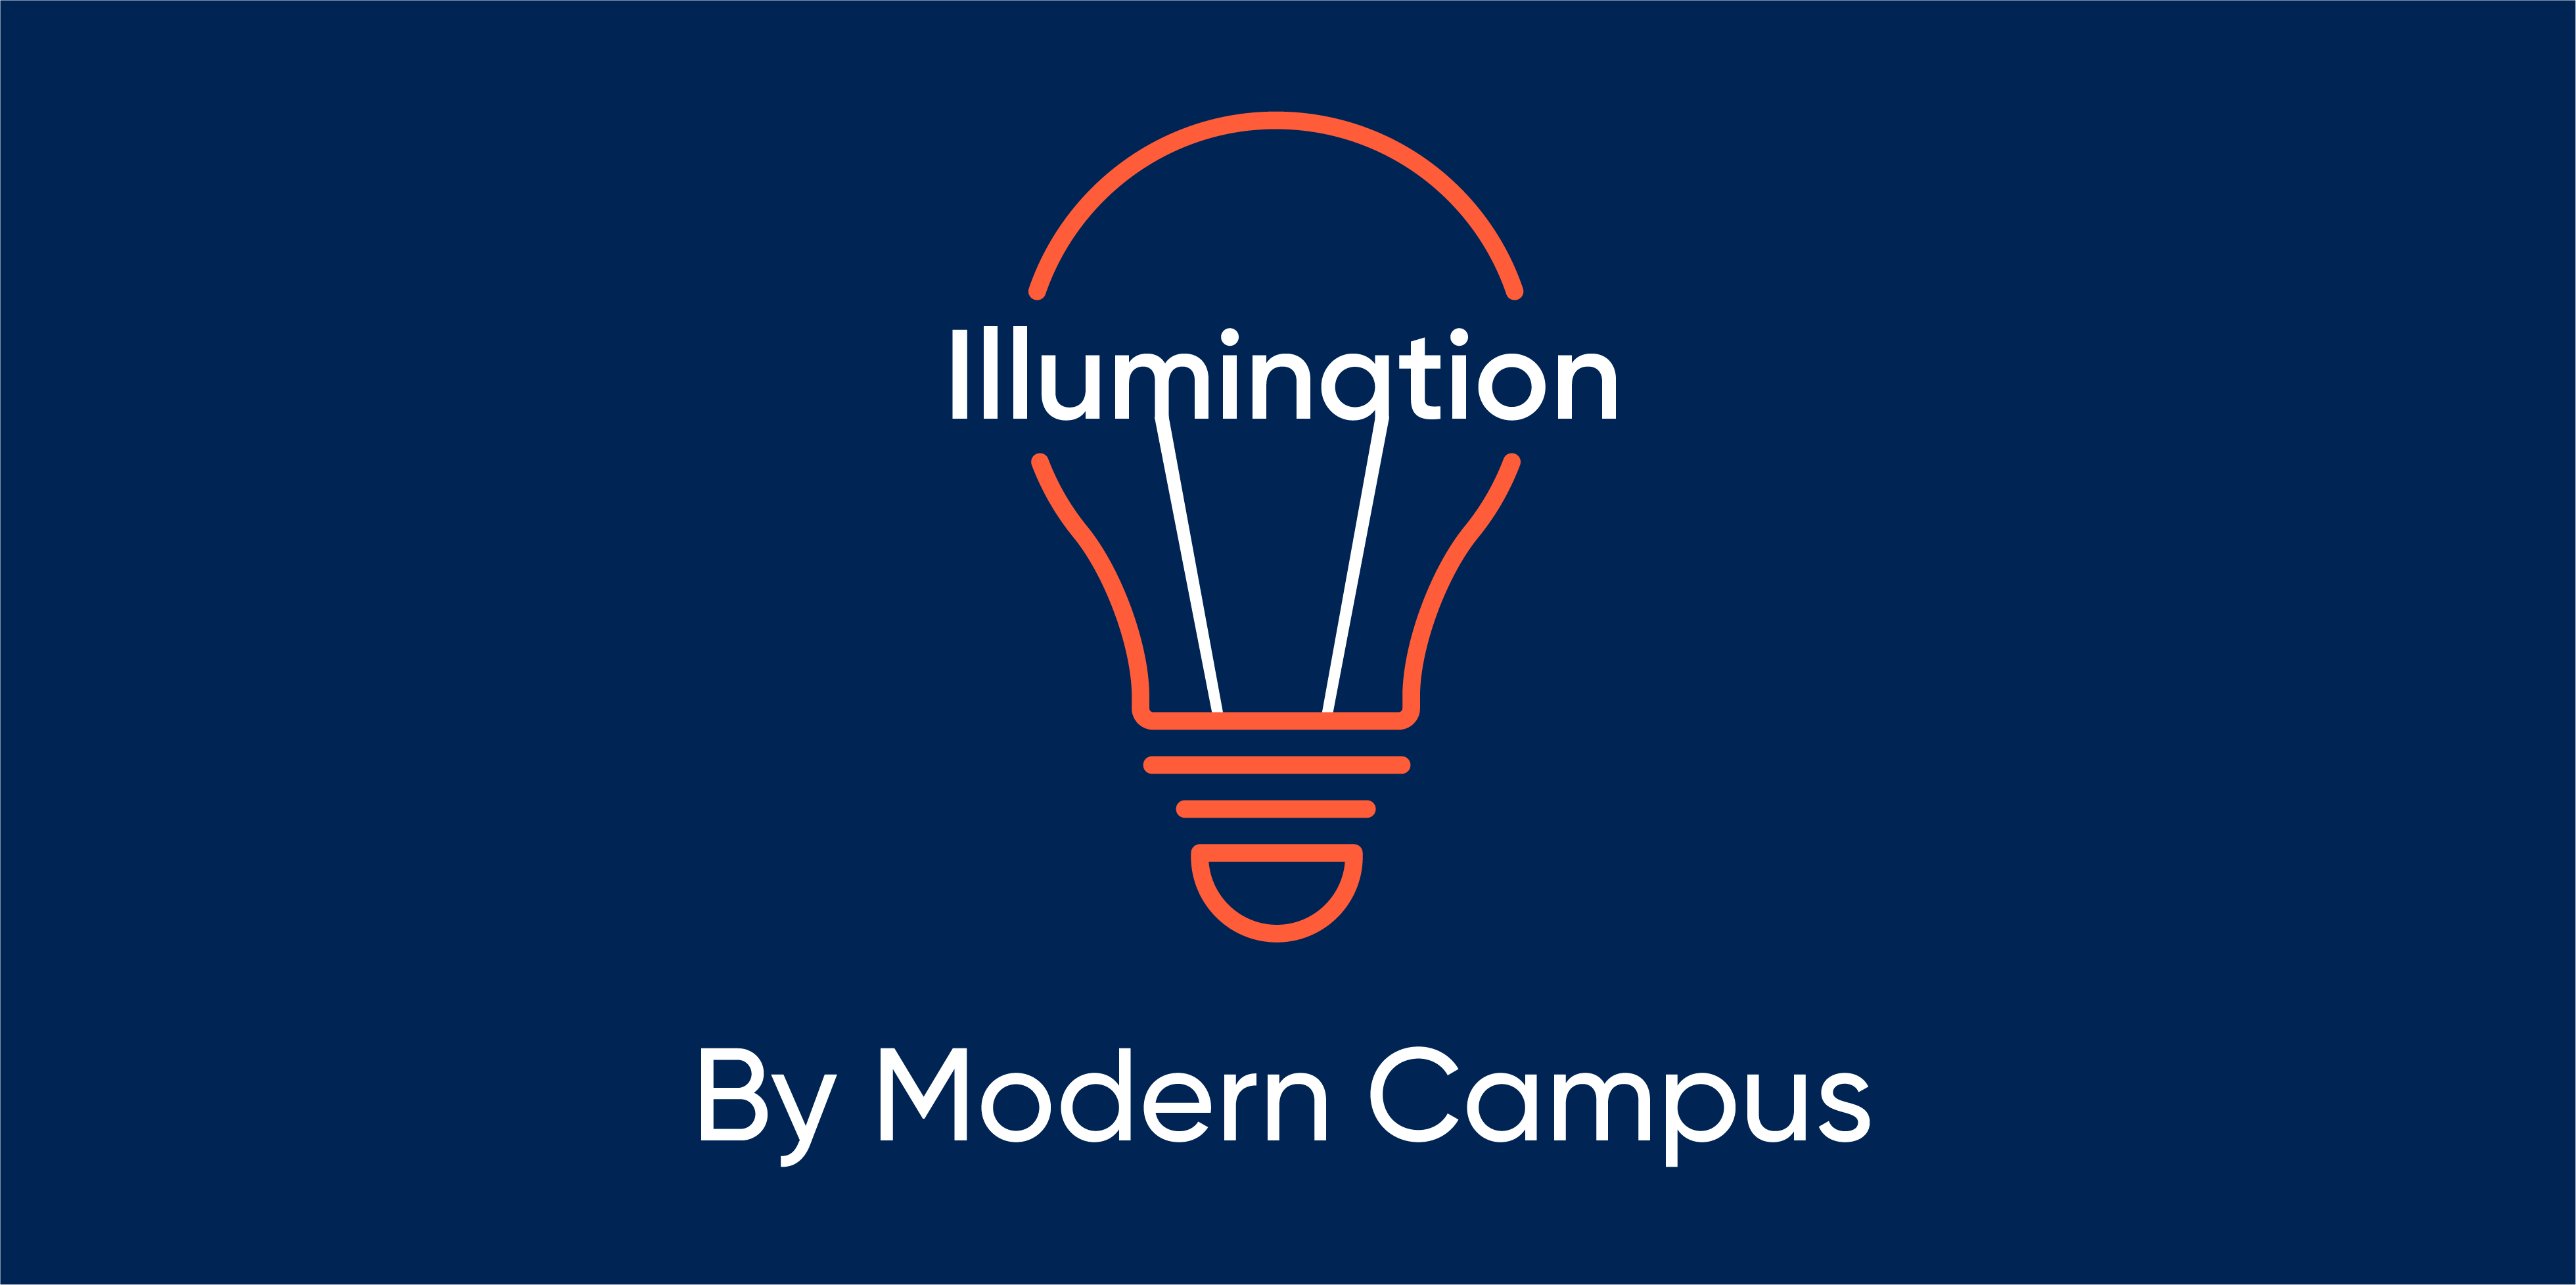 Episode 92: Illumination by Modern Campus